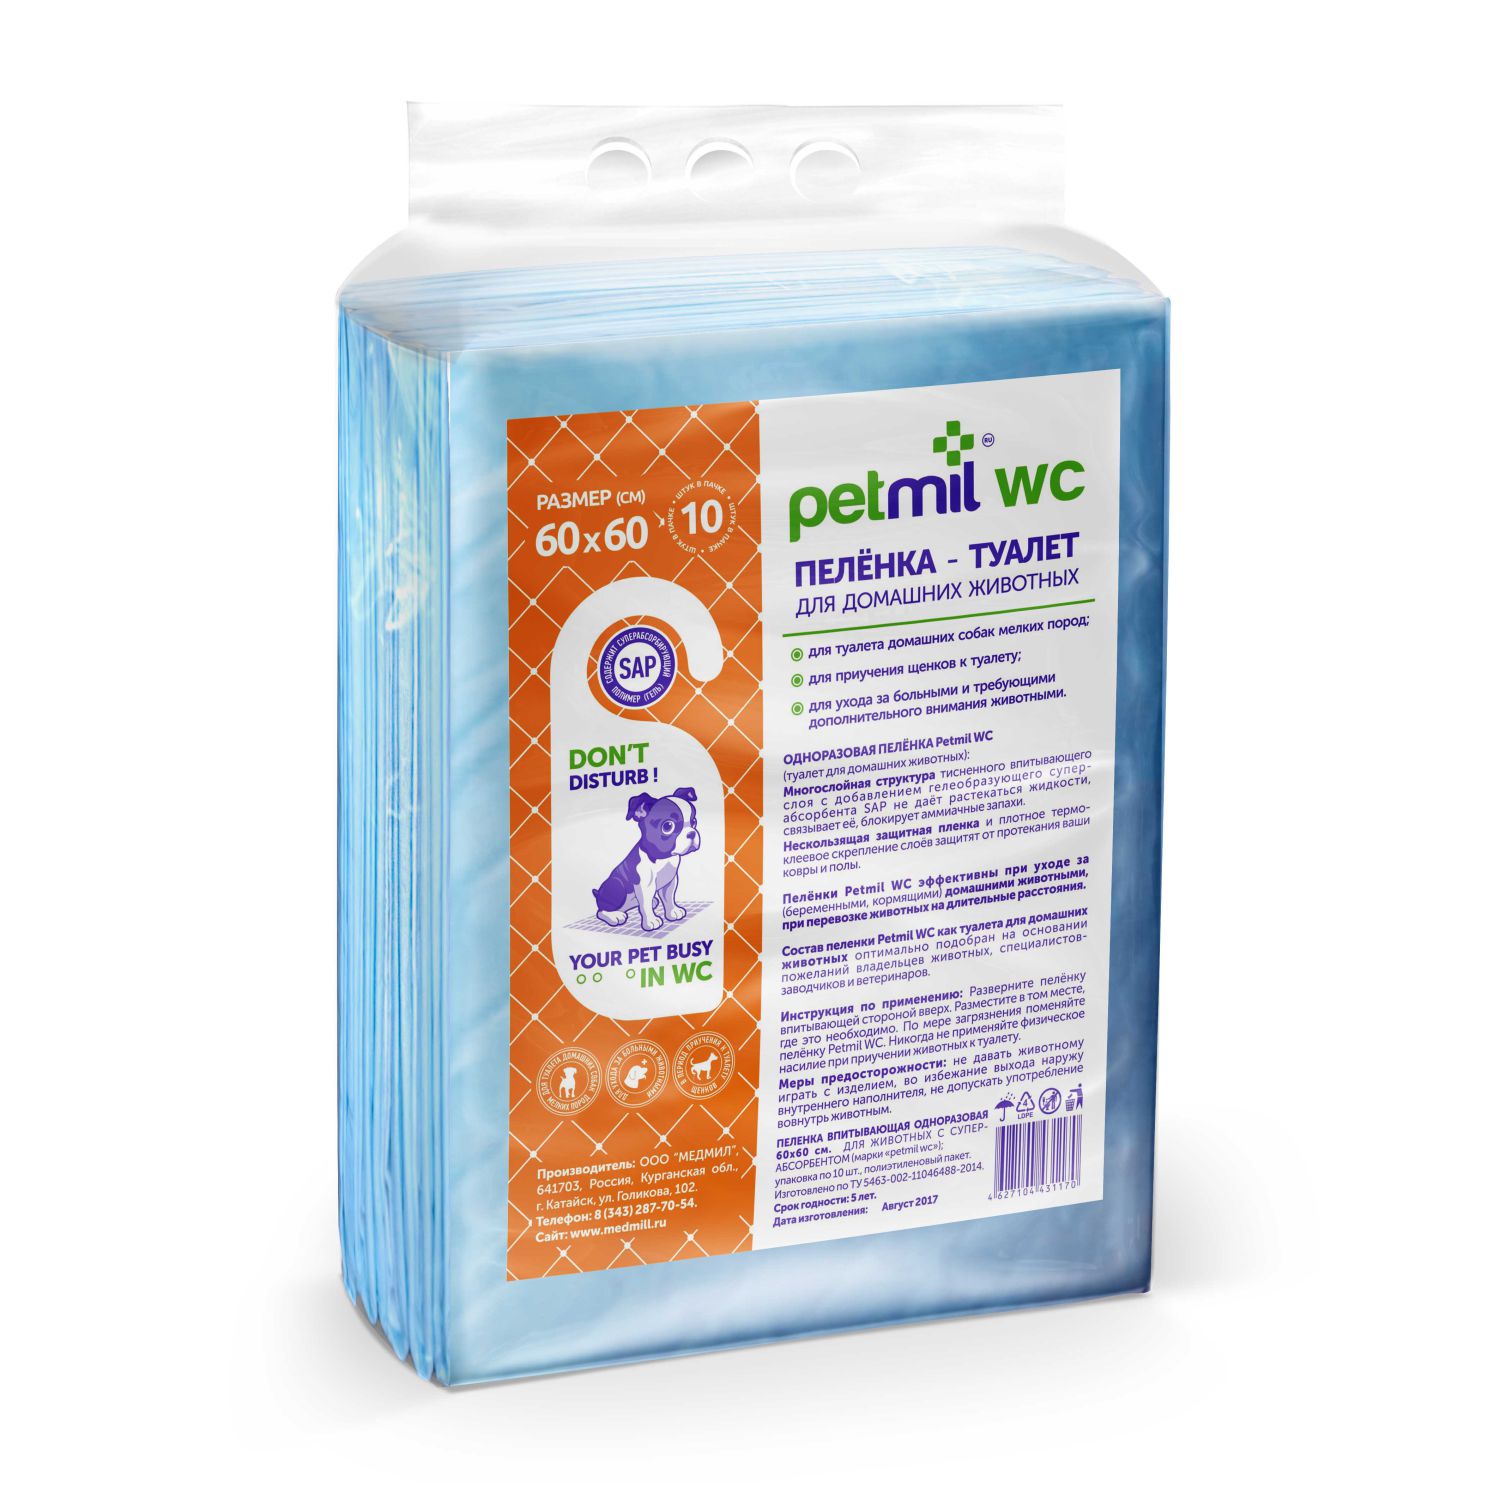 Пеленка-туалет впитывающая одноразовая Petmil WC 60*60 см для животных с суперабсорбентом (упаковка 10 штук)